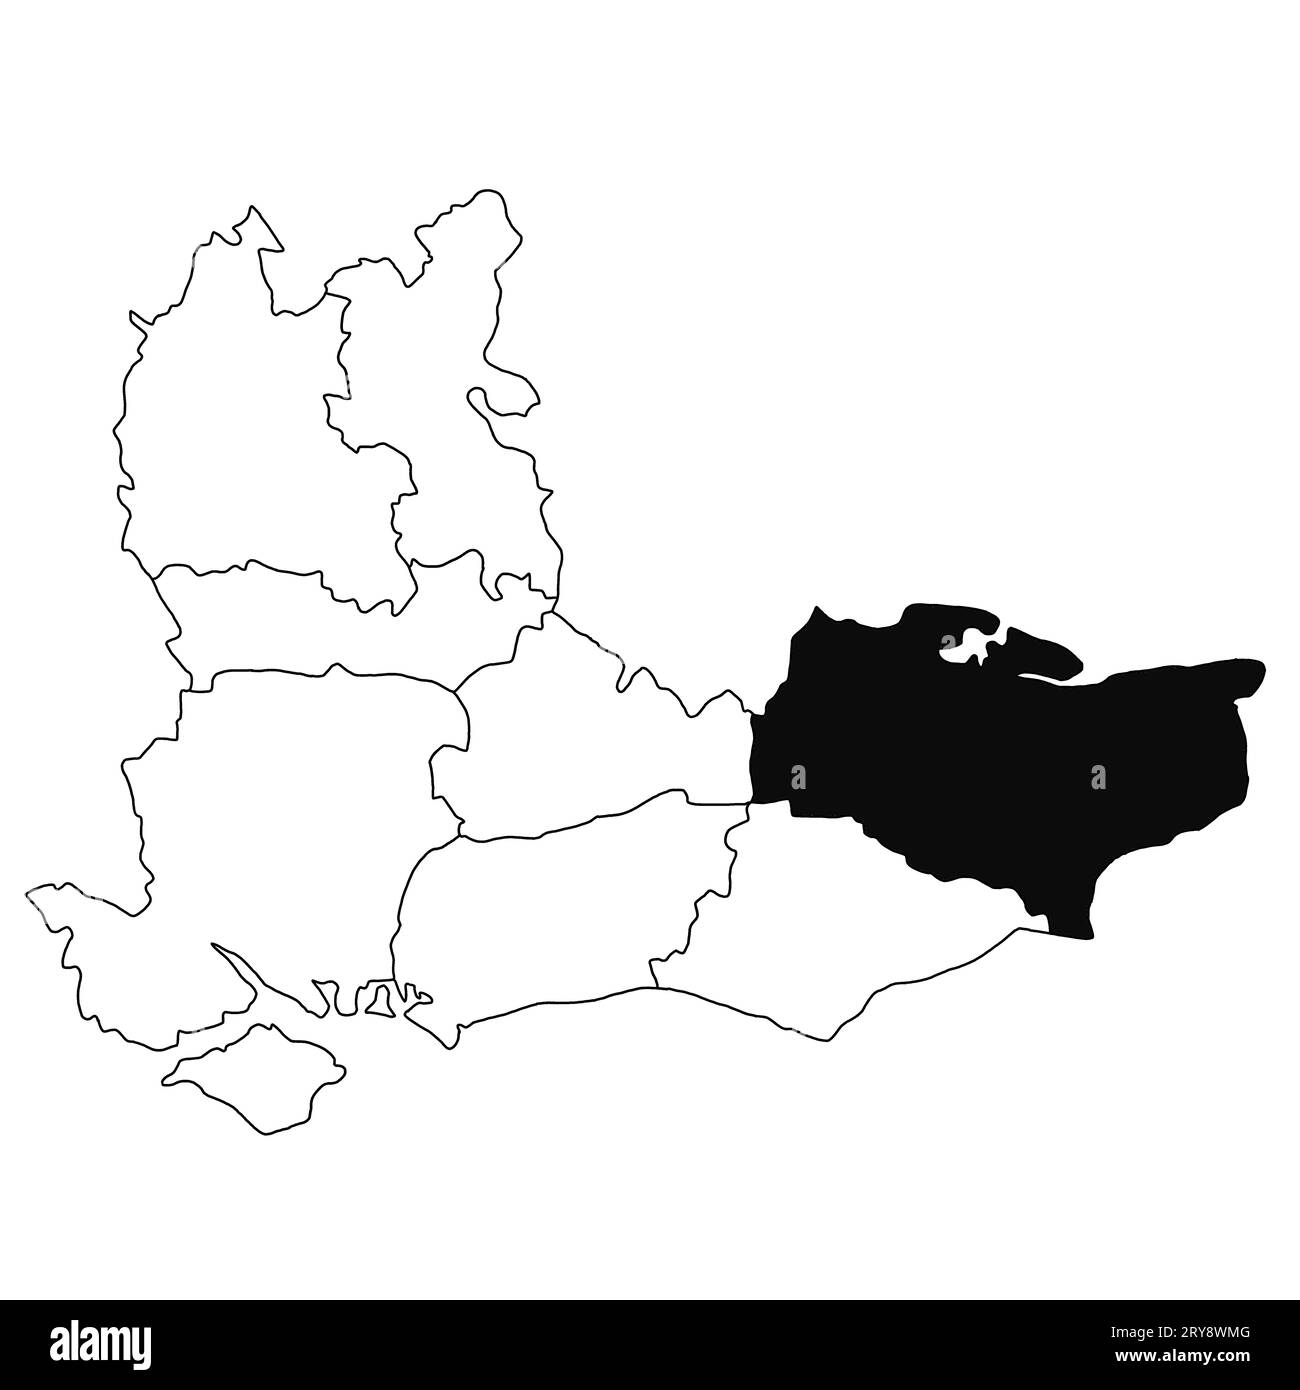 Carte du Kent dans la province du sud-est de l'Angleterre sur fond blanc. Carte de Single County mise en évidence en noir sur la carte administrative du sud-est de l'Angleterre Banque D'Images